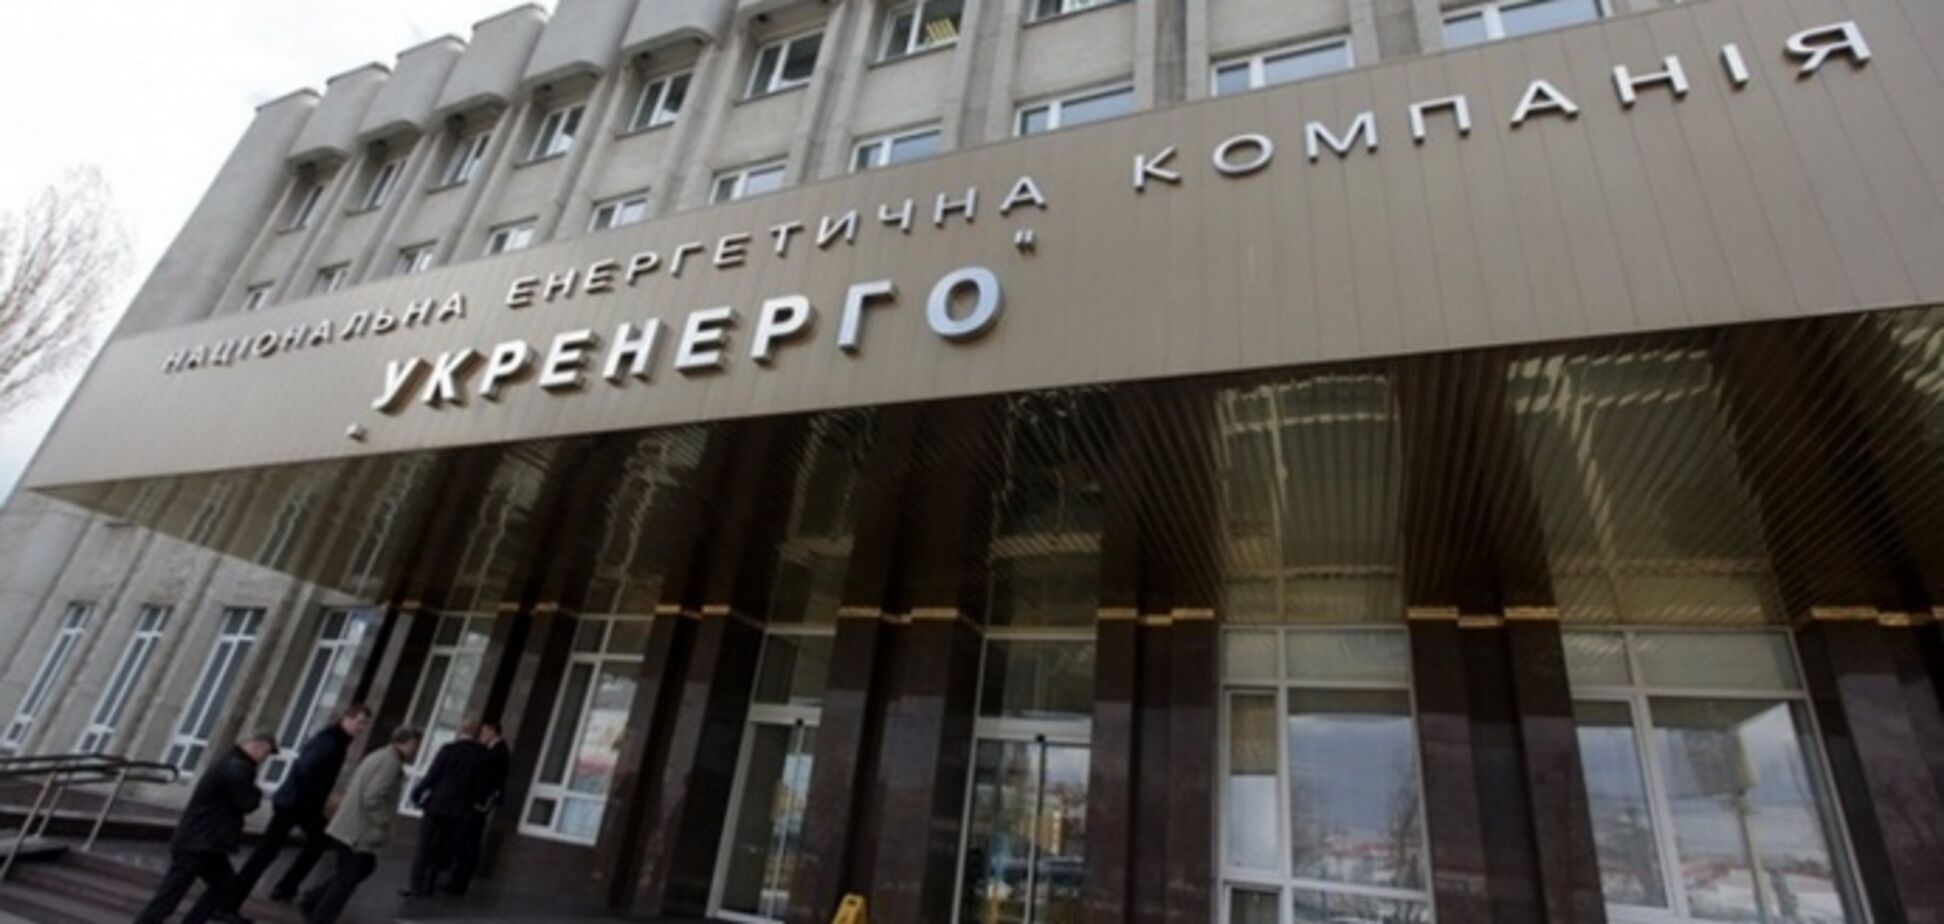 Украина может покрыть дефицит средств в энергосистеме за счет доходов 'Укрэнерго' от экспорта, – Копач